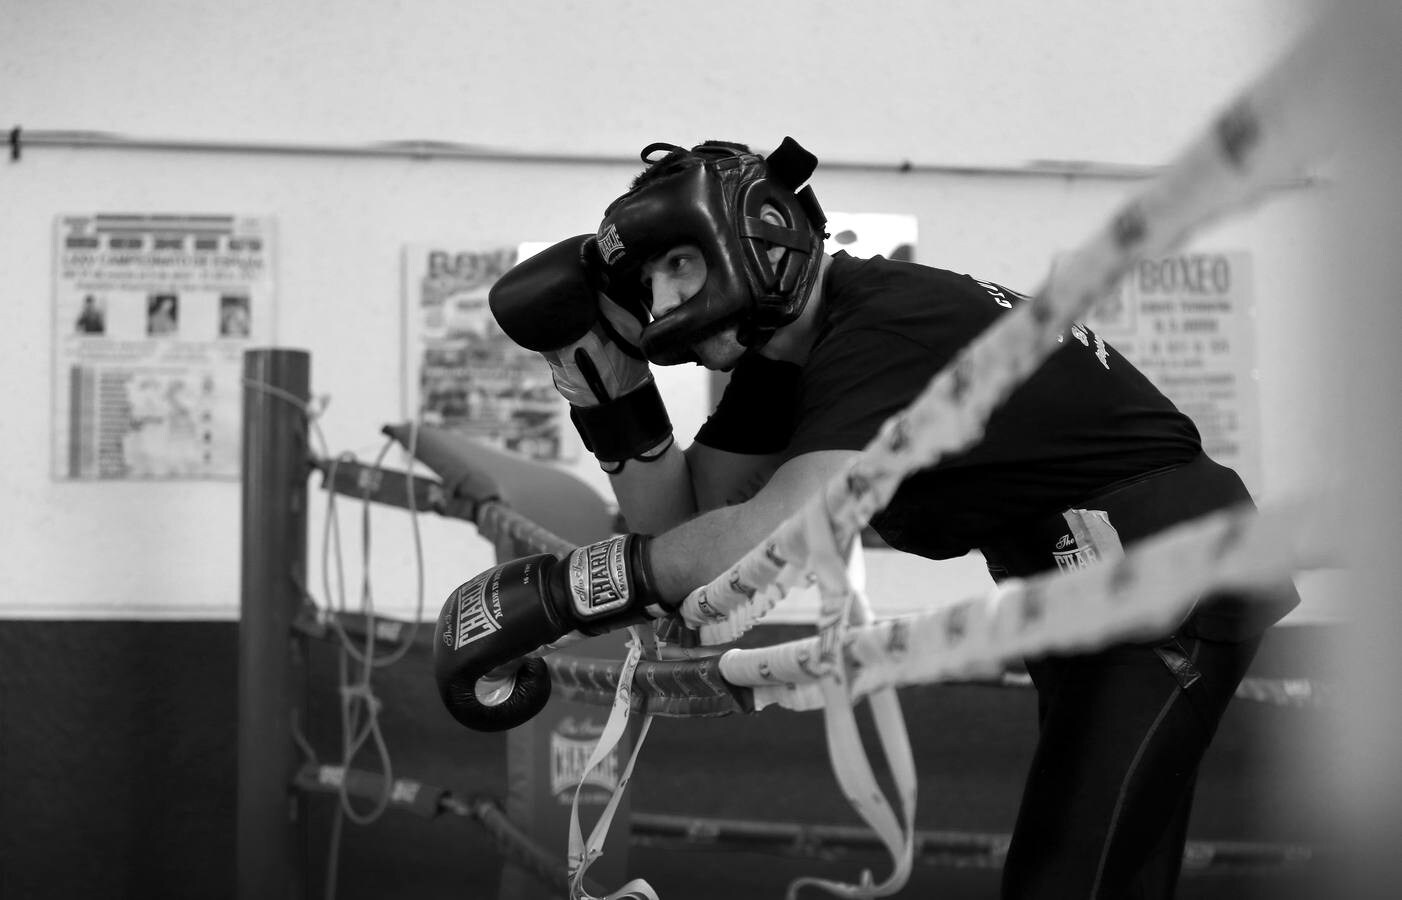 El boxeo y kickboxing de Córdoba, en blanco y negro